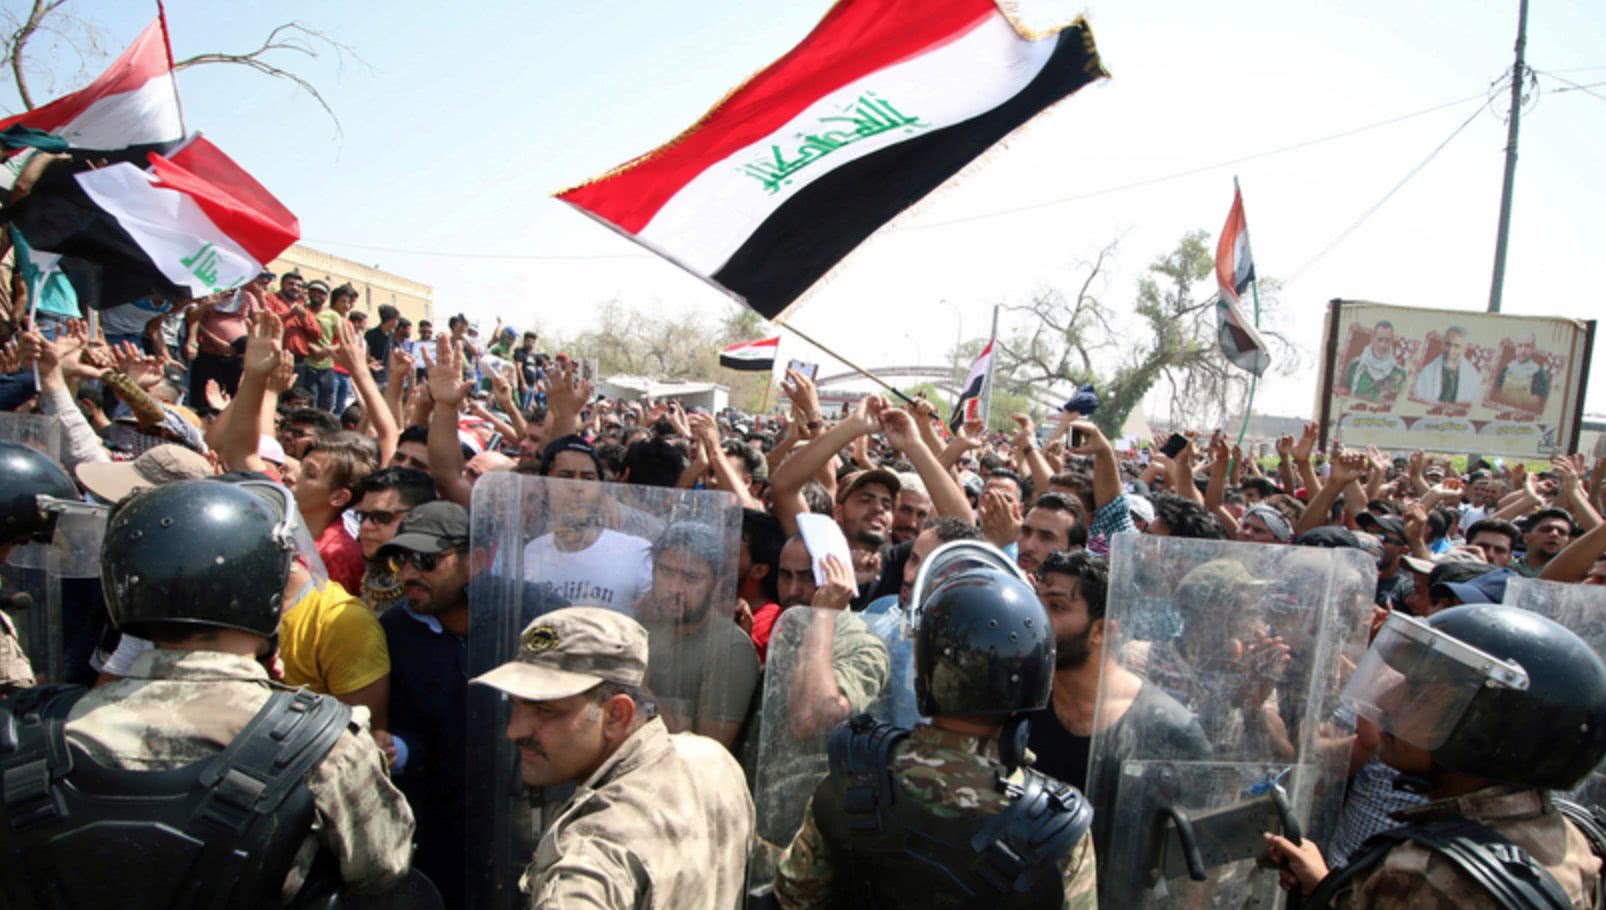 伊拉克骚乱持续,美国和沙特被指幕后黑手